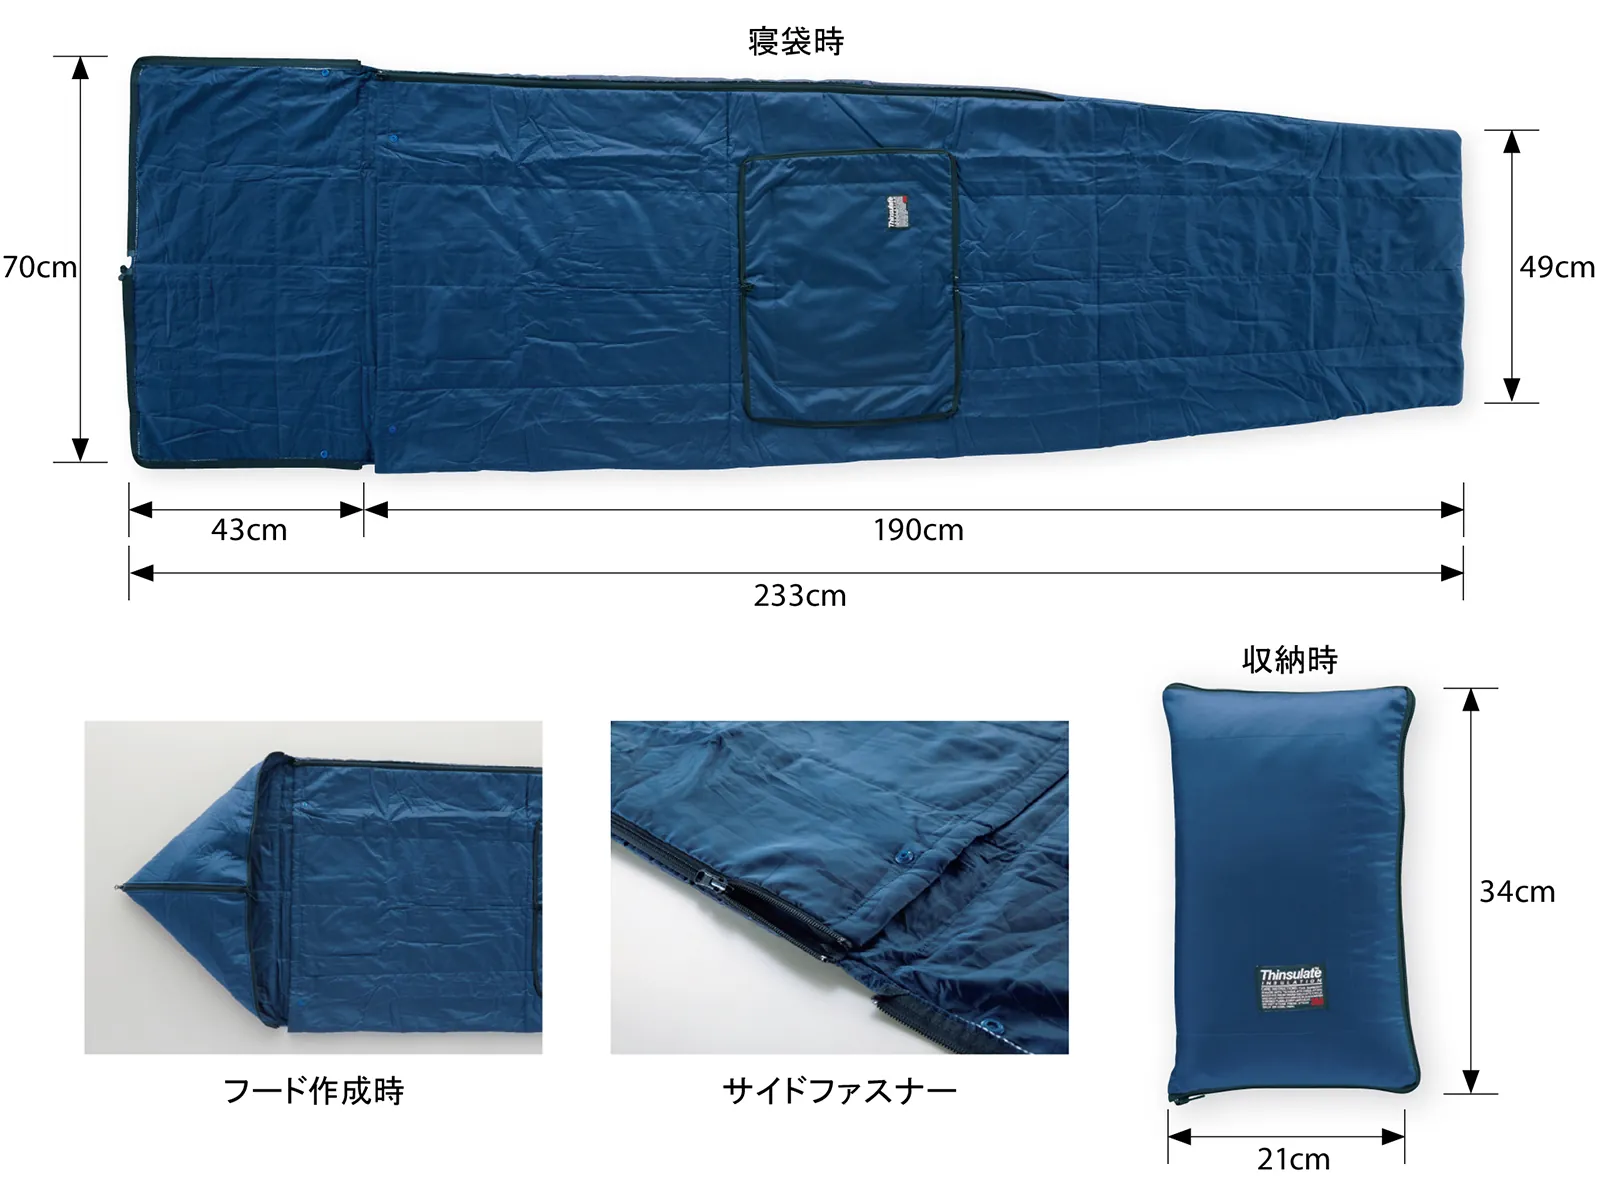 3Mシンサレート災害用寝袋の特徴